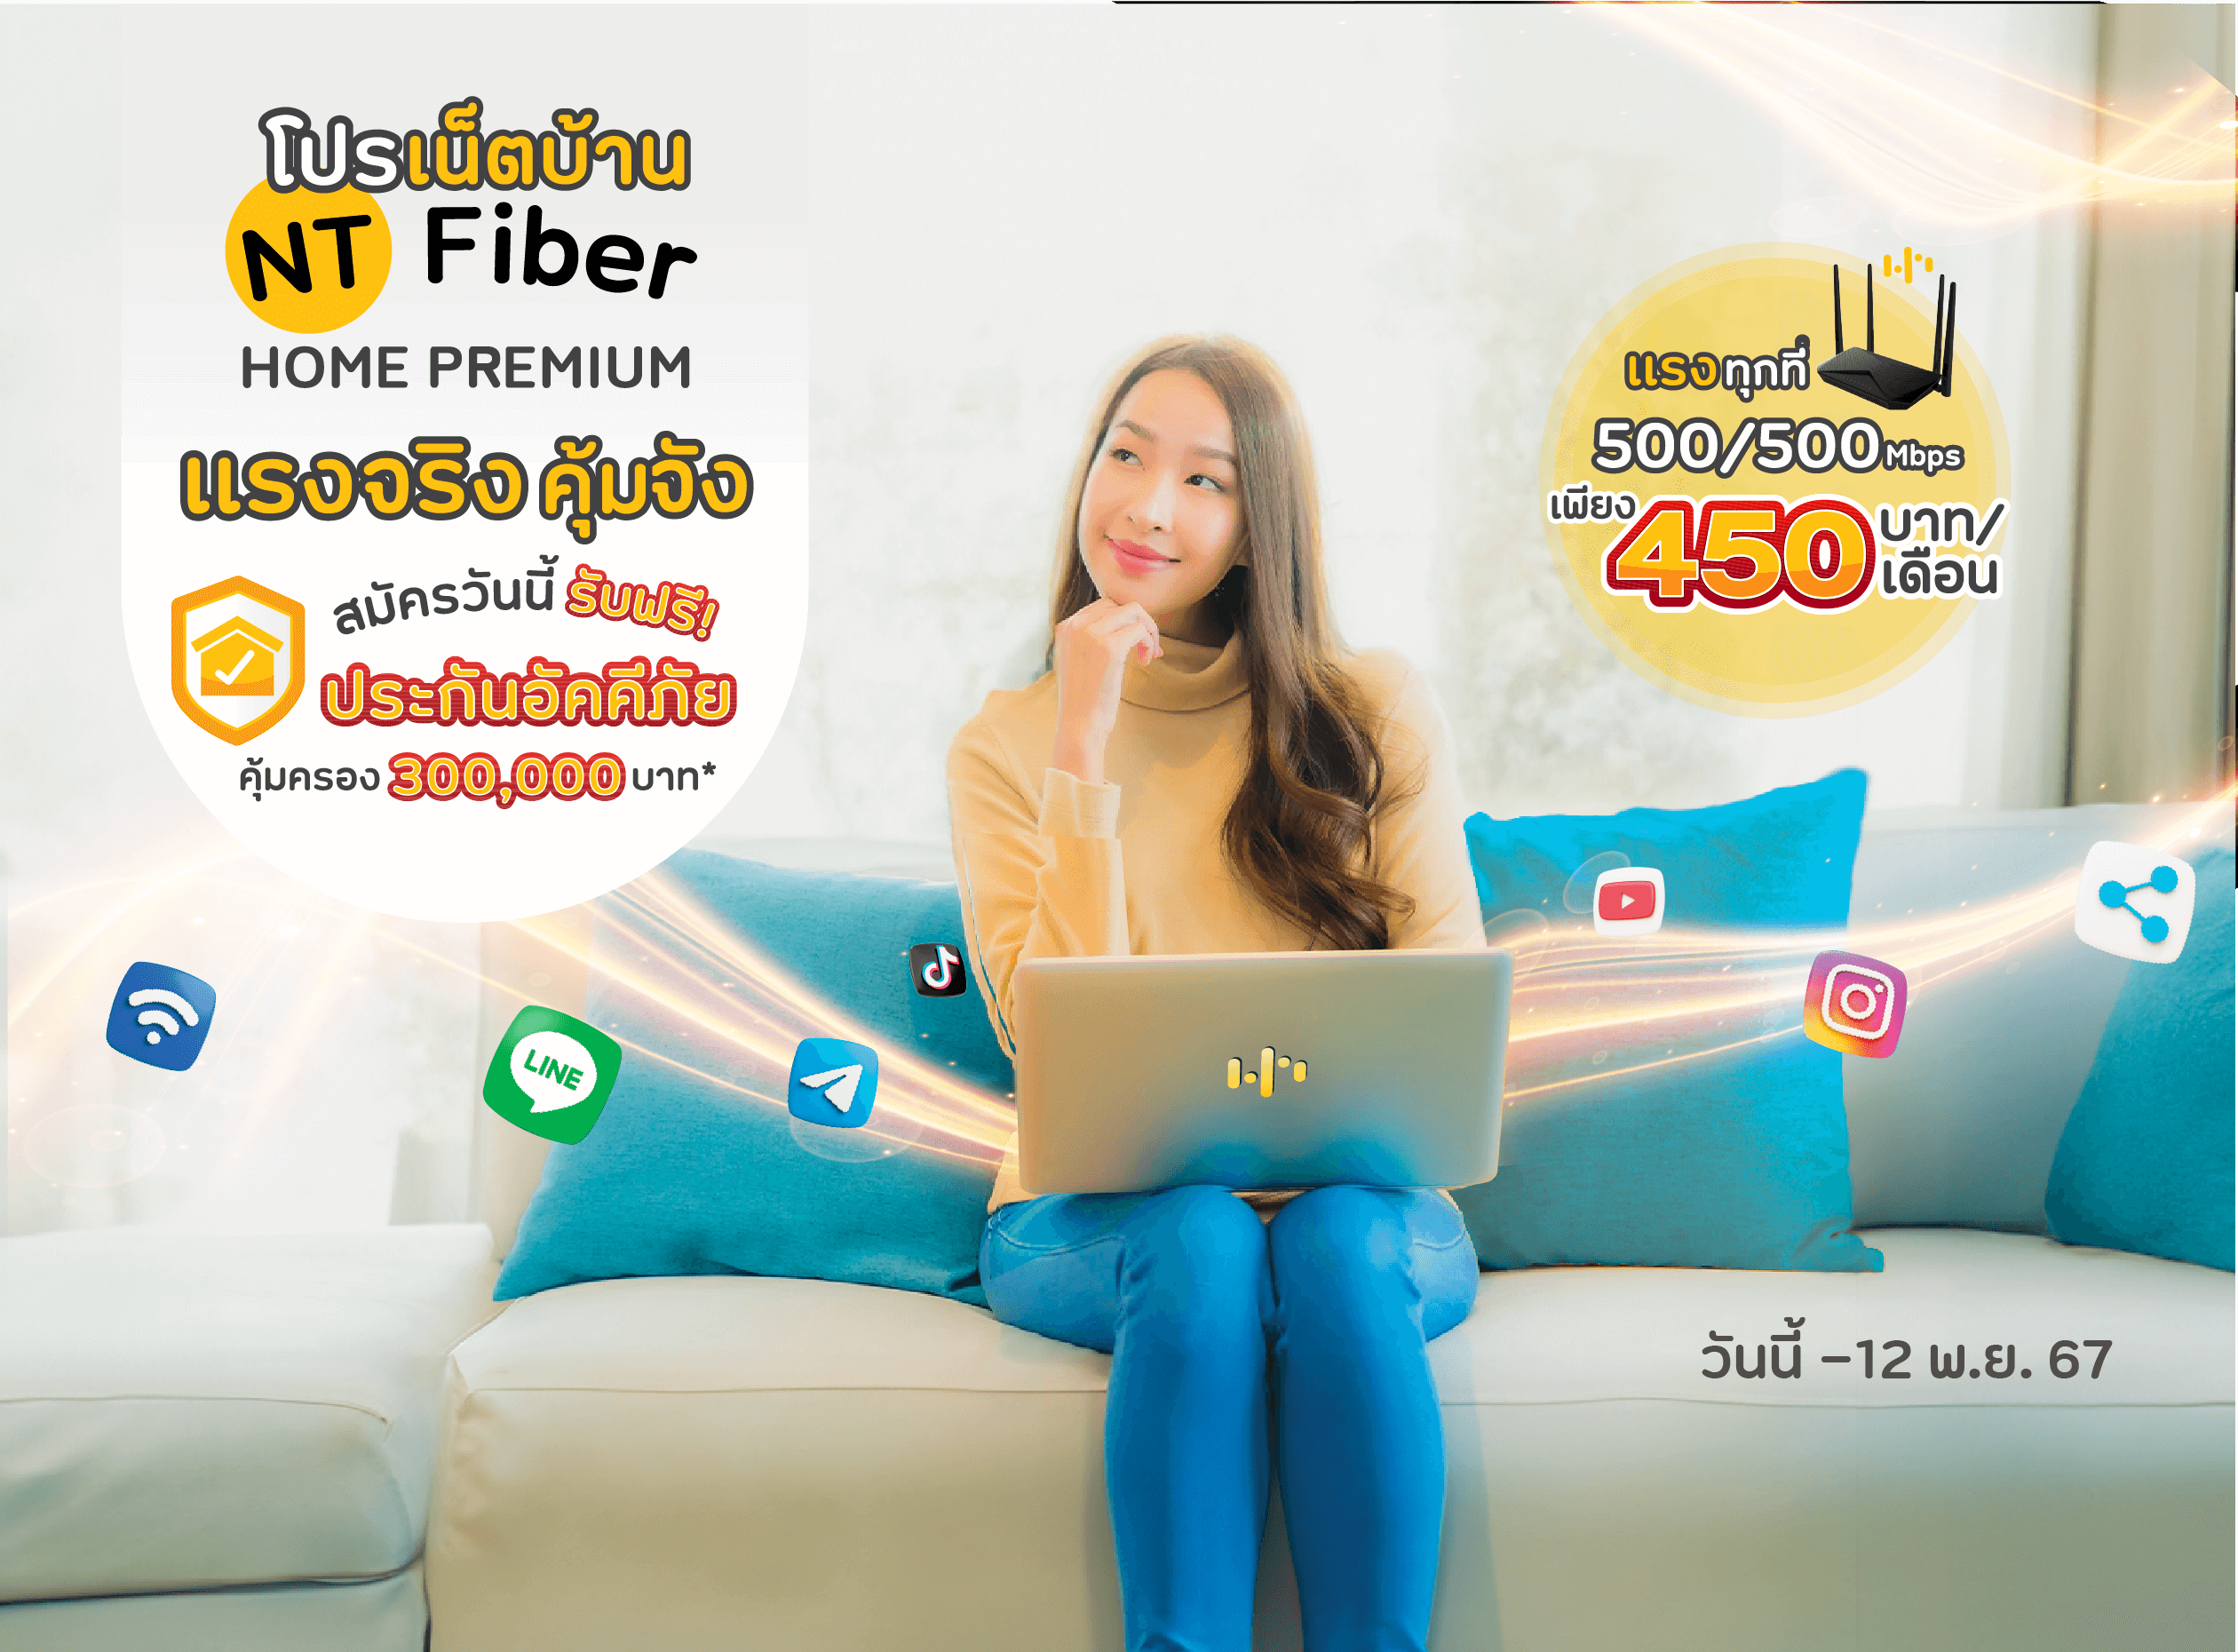 โปร NT Fiber Home Premium แรงทุกที่ 500/500 Mbps เพียง 450 บาท/เดือน